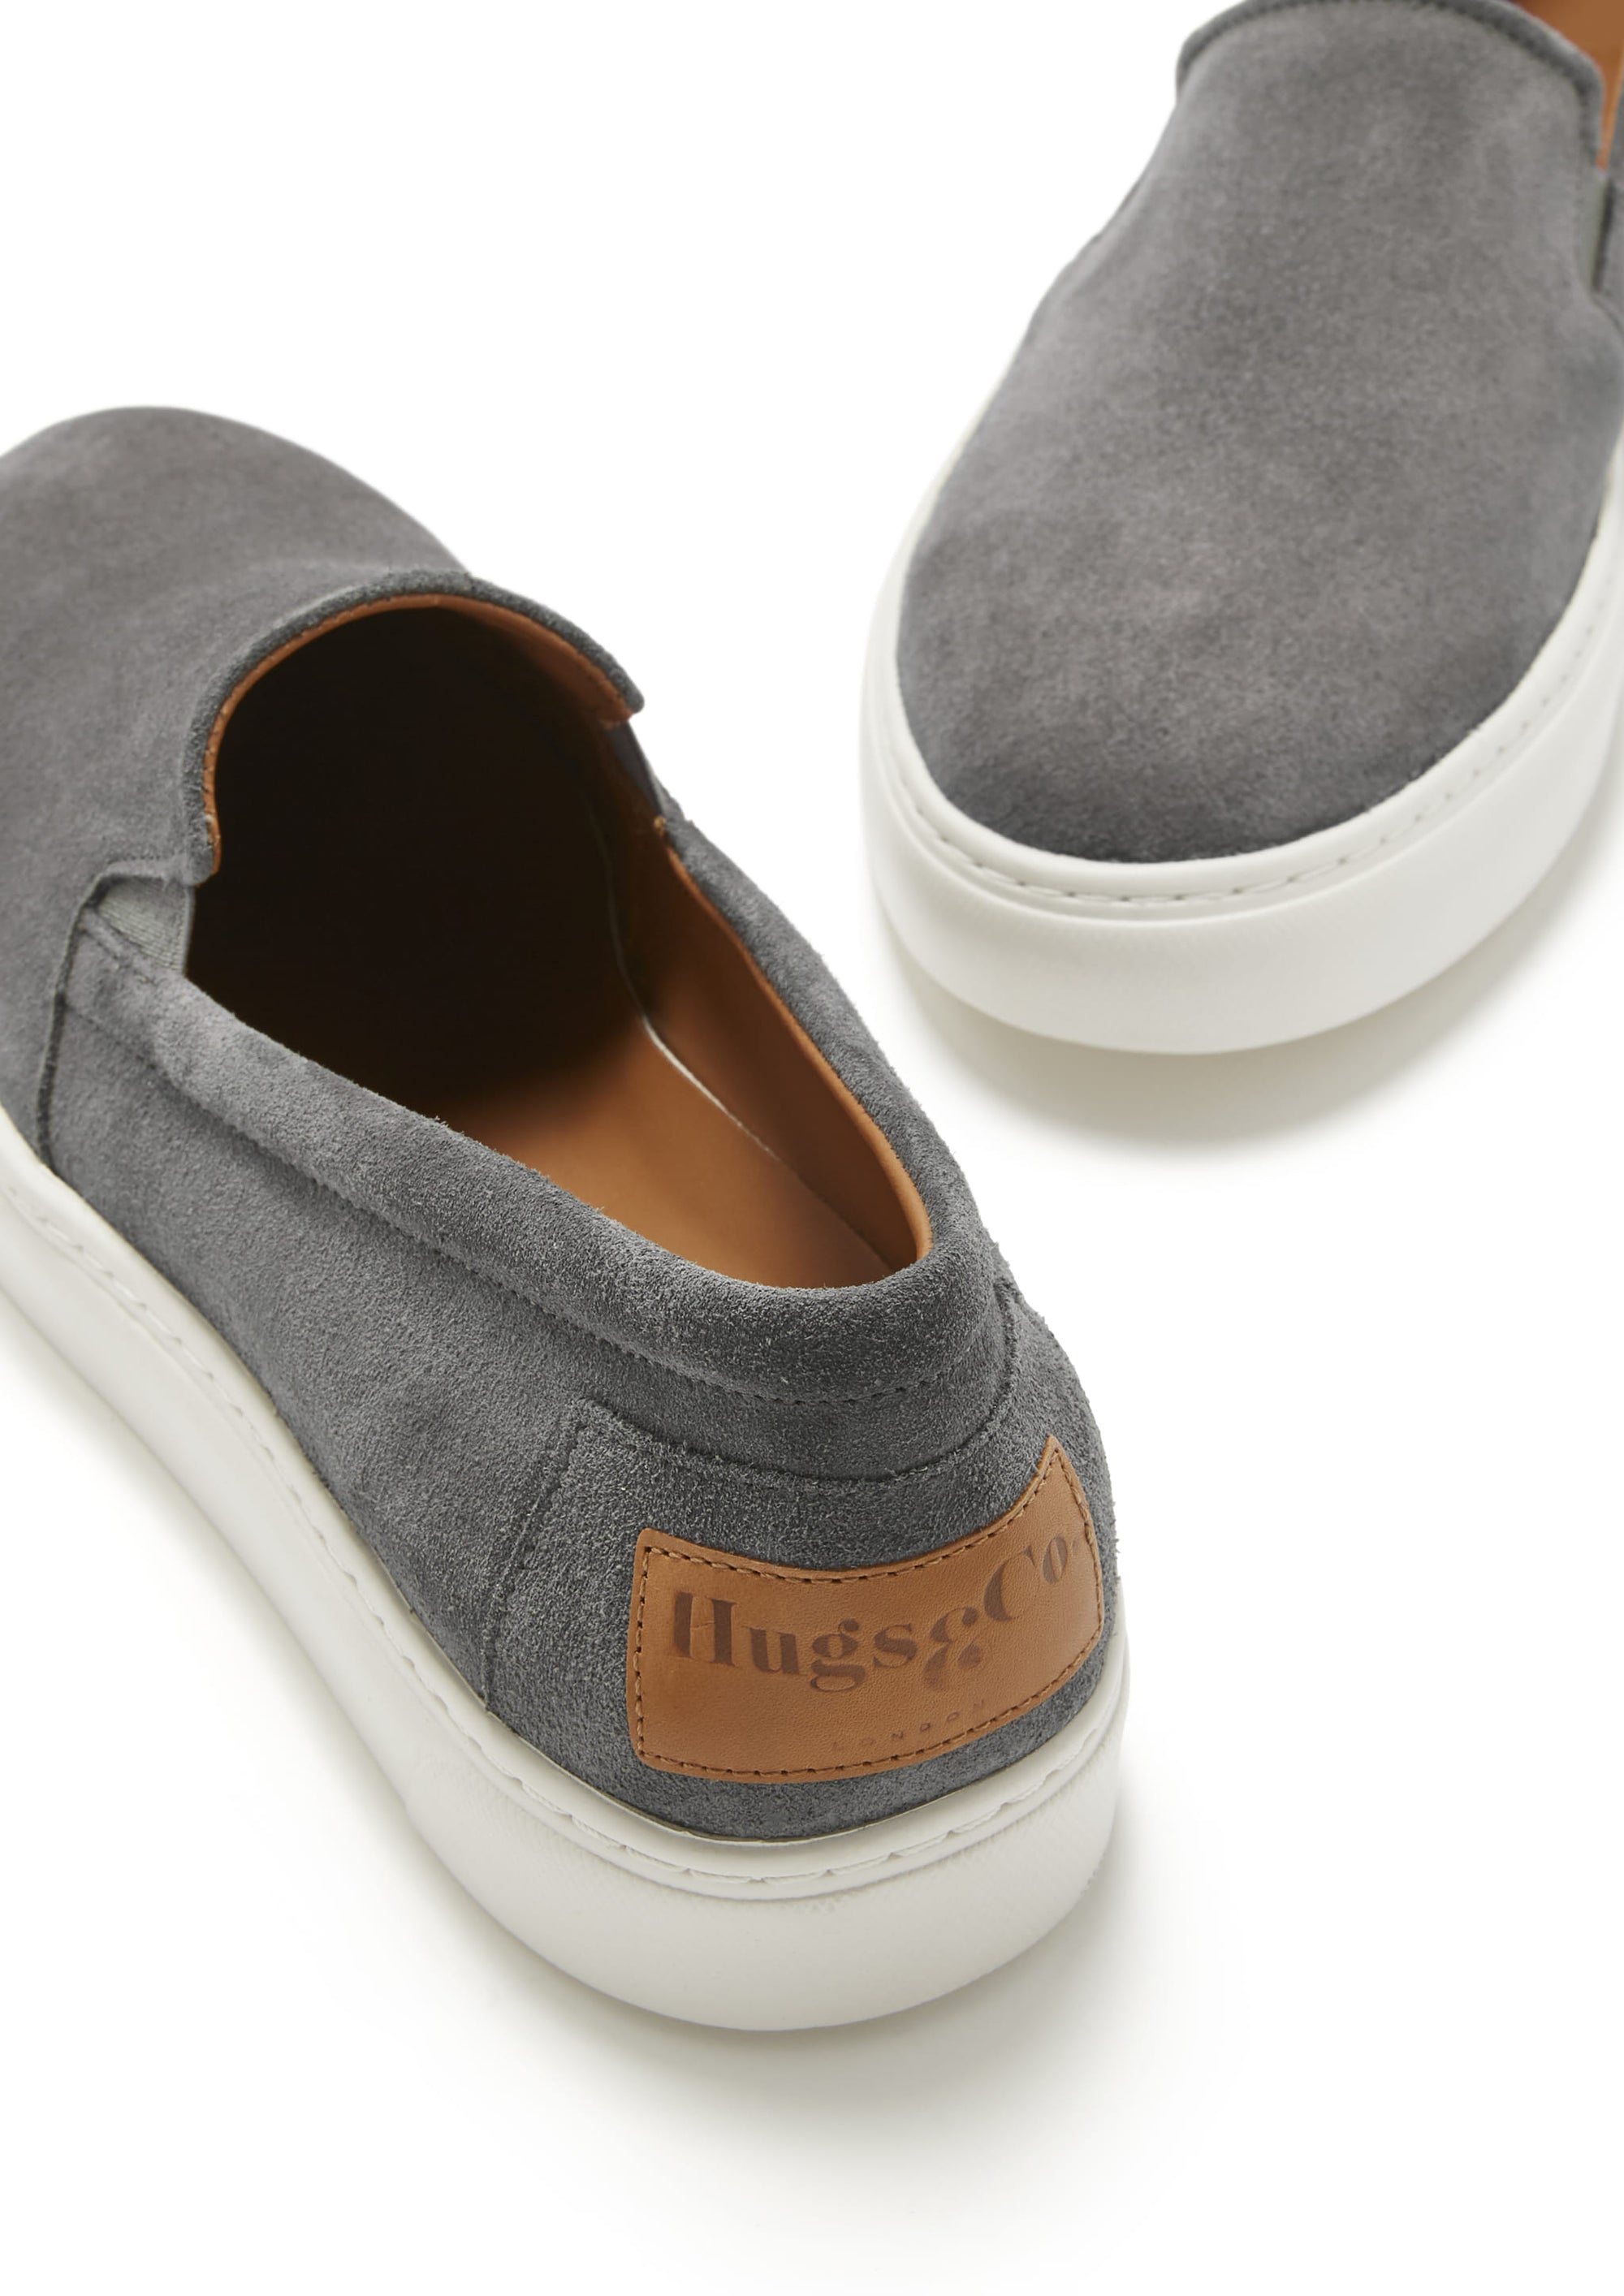 Slip-on Sneakers, slate grey suede